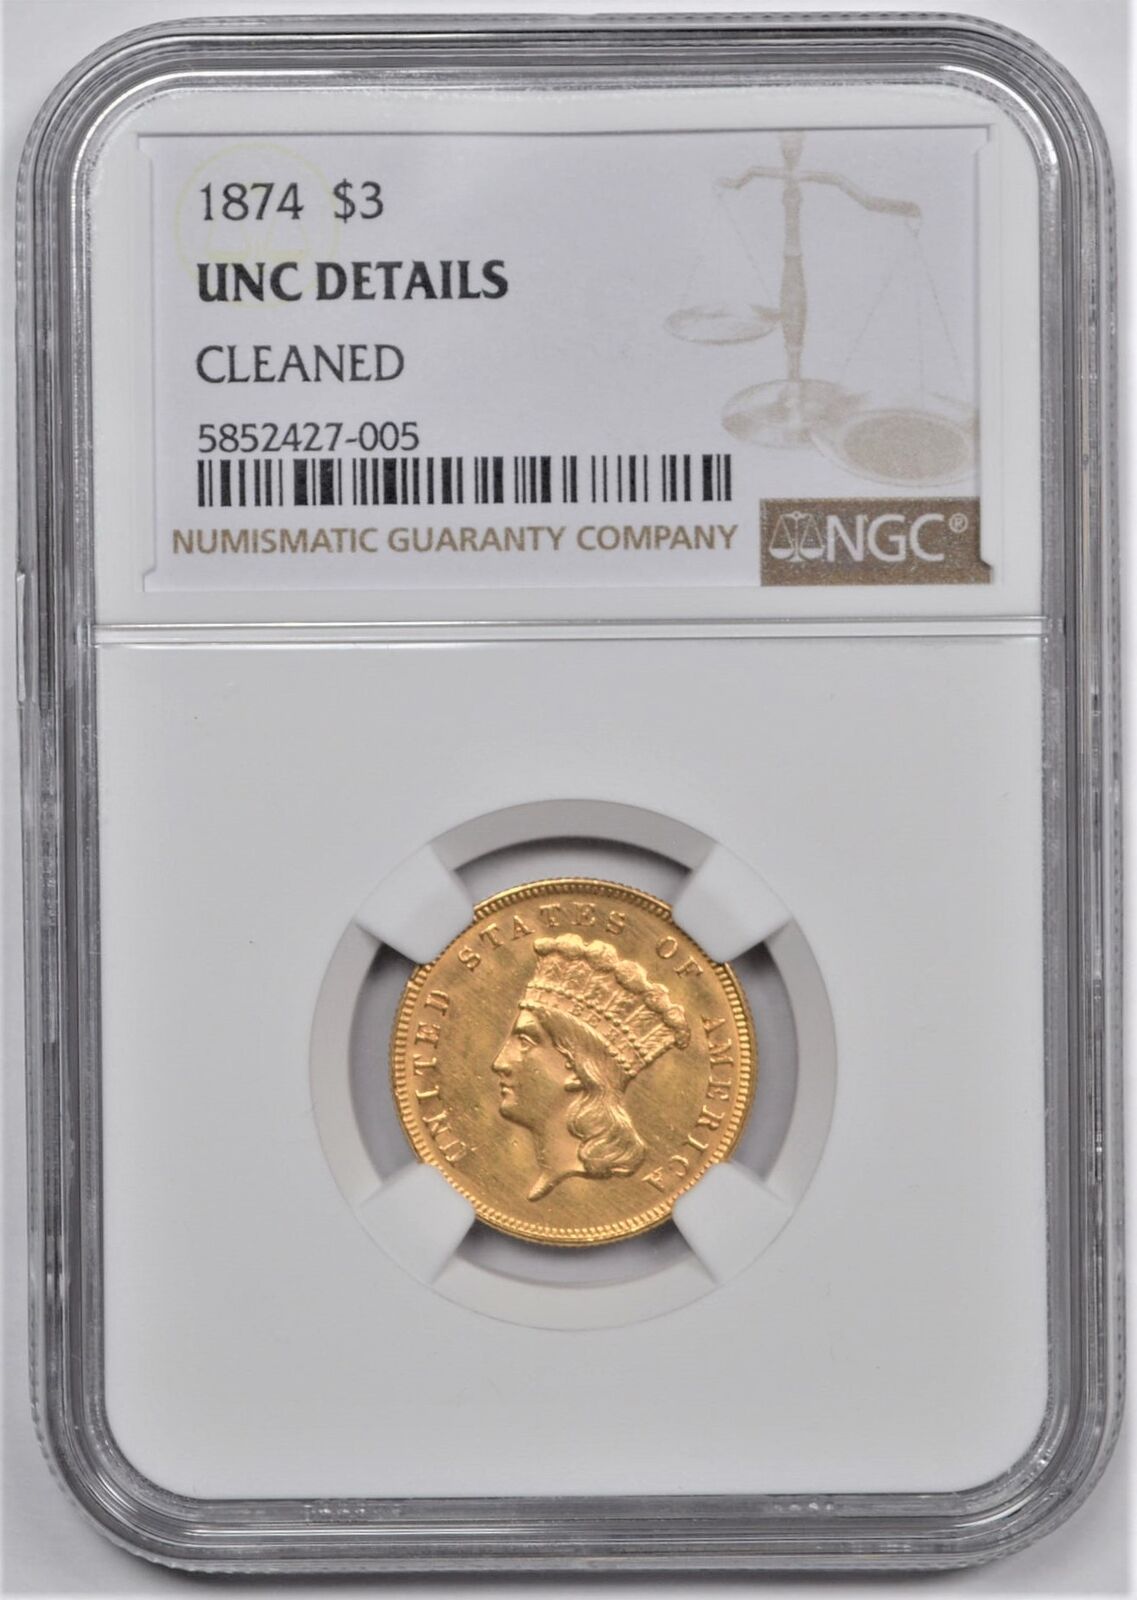 1874 PRINCESS HEAD GOLD $3 NGC UNC DETAILS